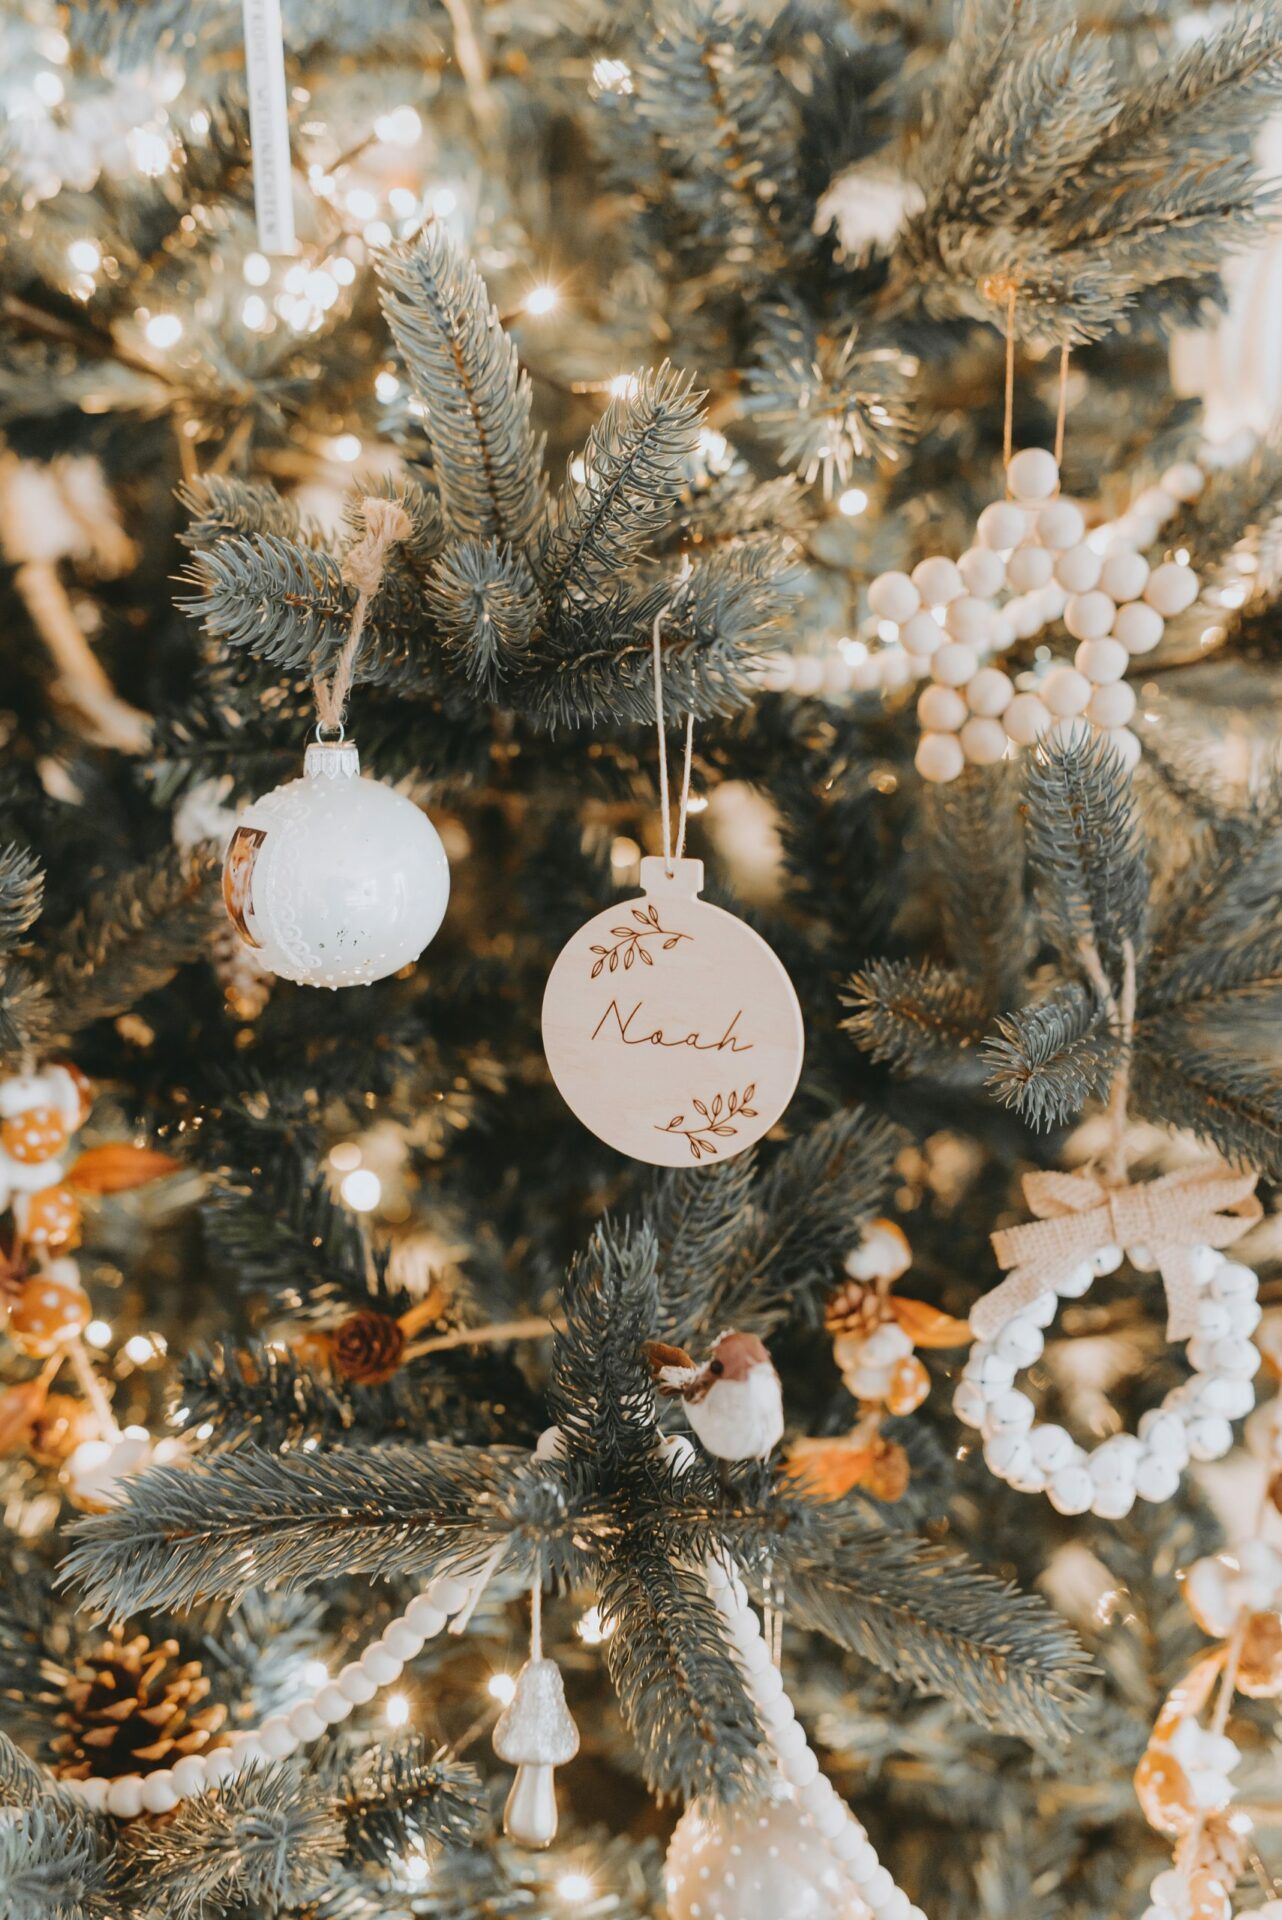  Weihnachtsbaum Hintergrundbild 1282x1920. Personalisierter Weihnachtsbaumschmuck. Anlässe, Dekoration, Geschenke, Weihnachten, Weihnachtsbaum